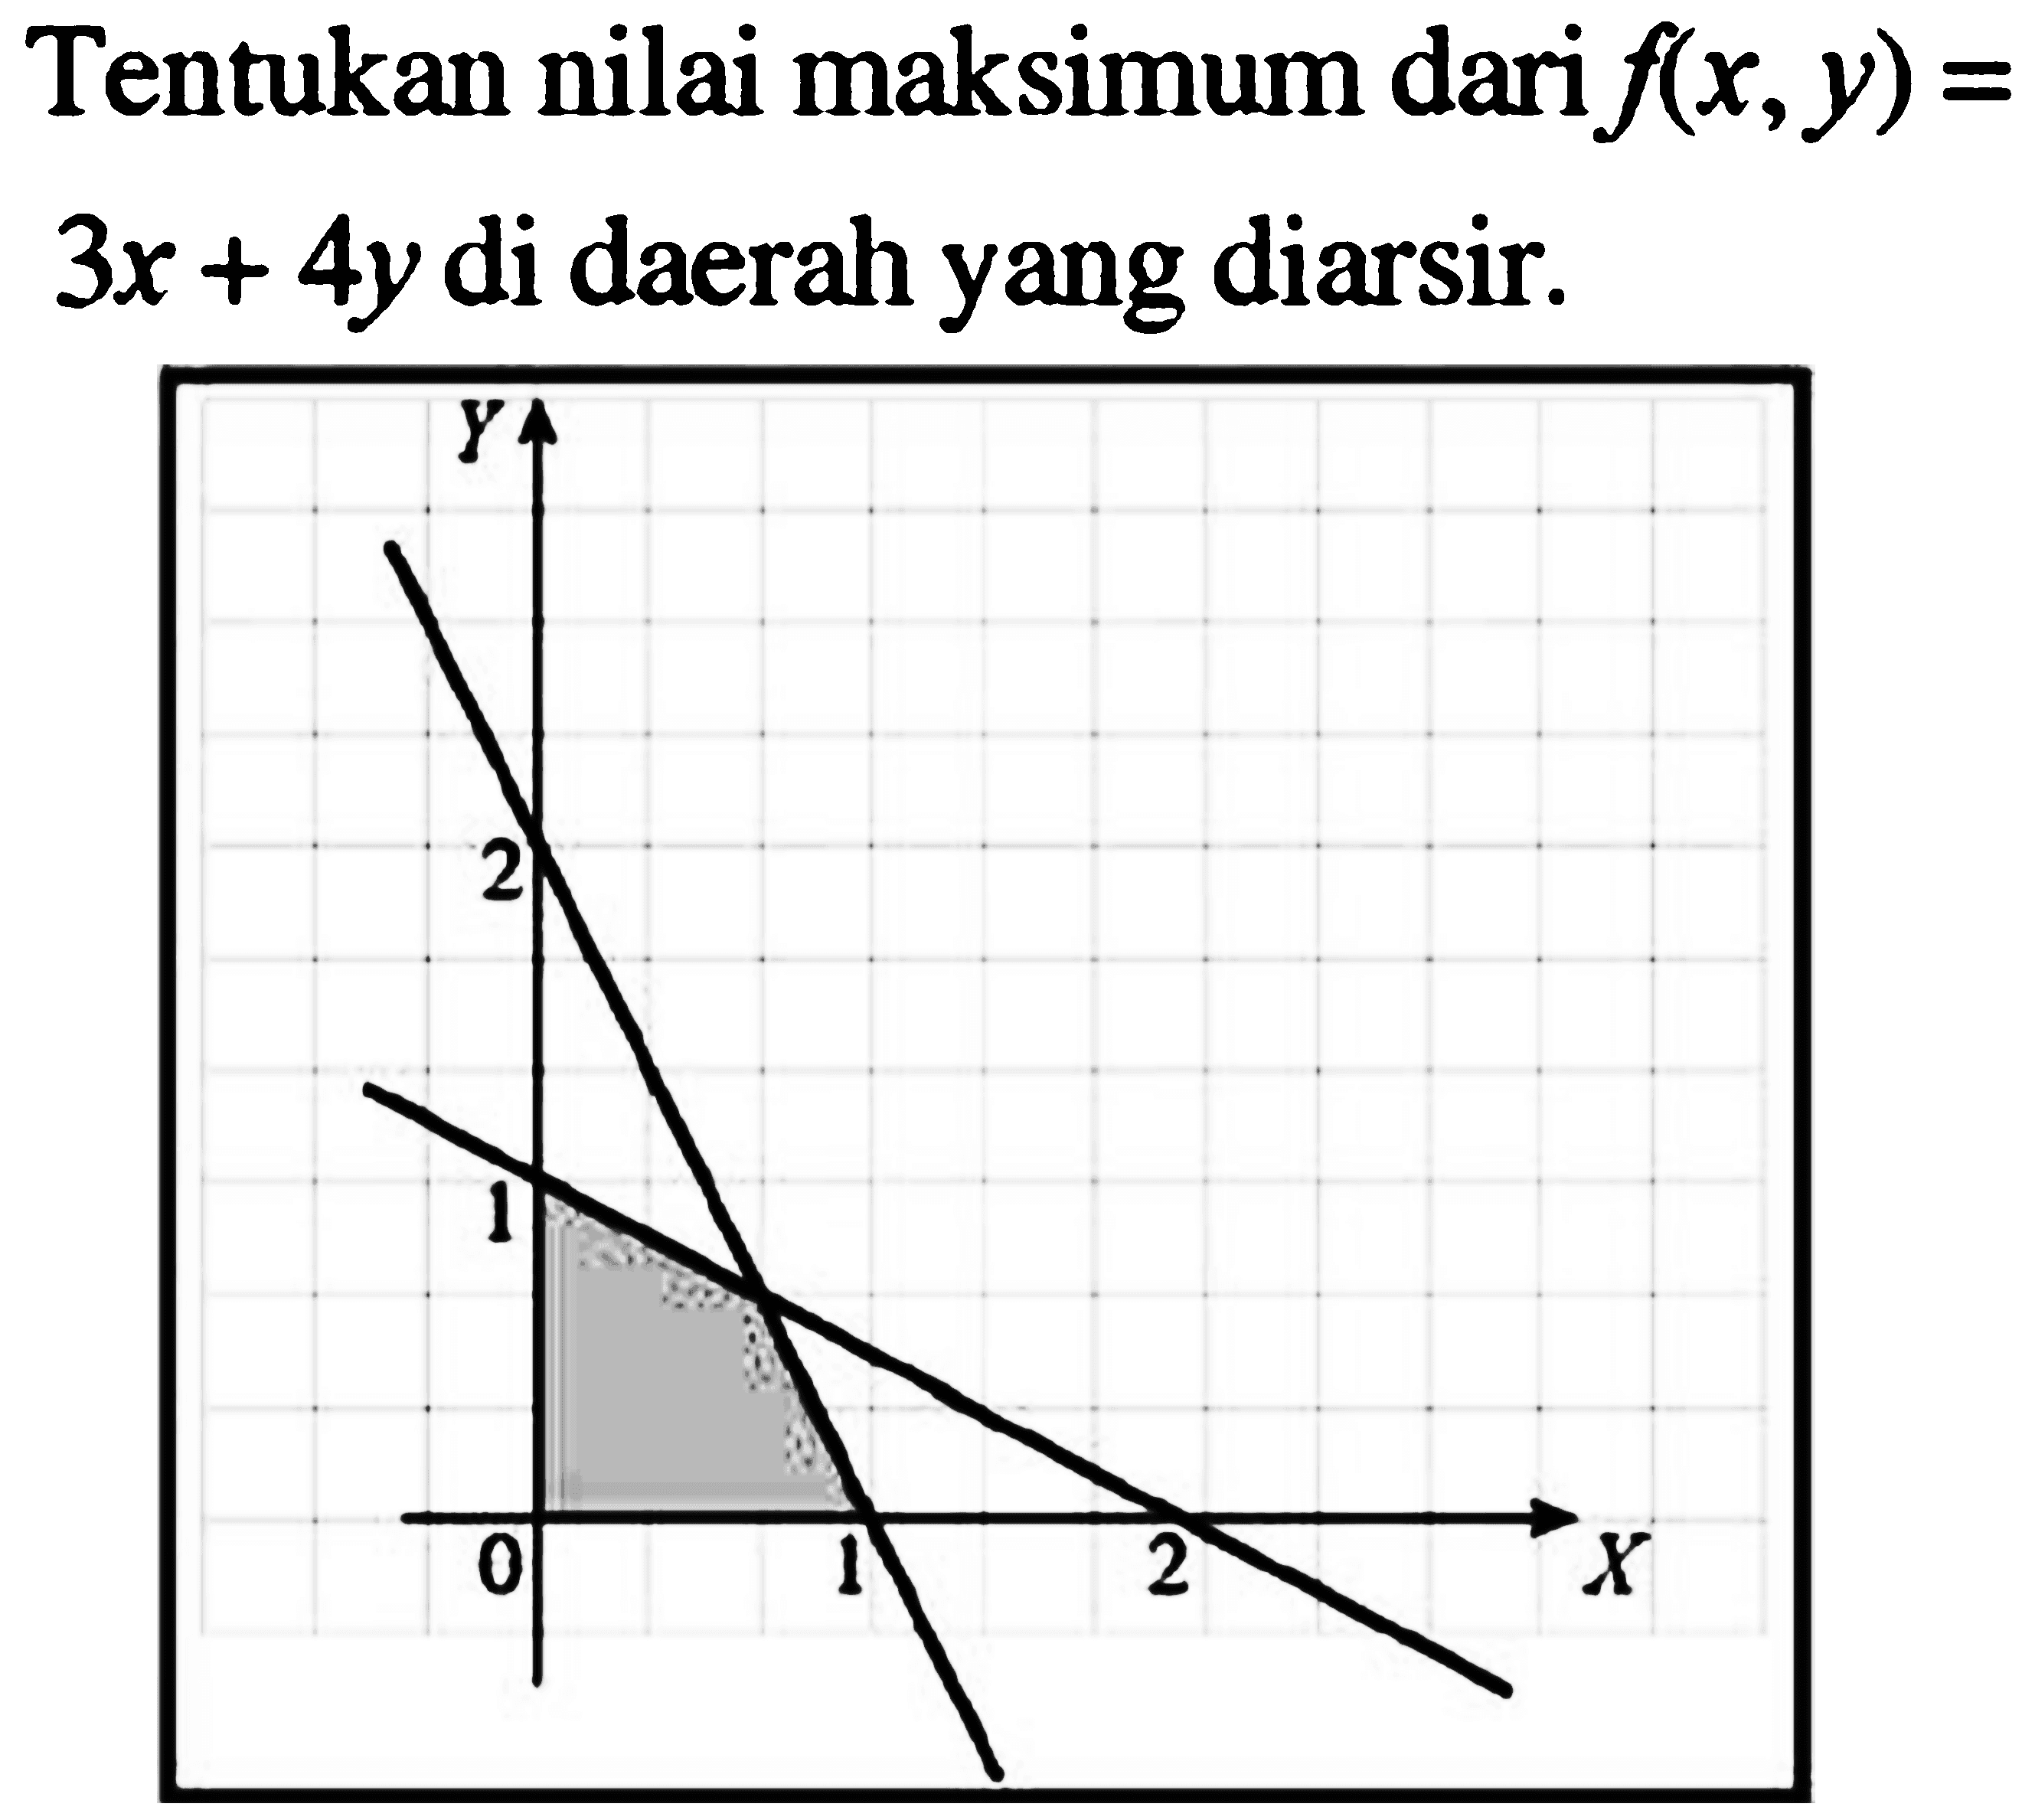 Tentukan nilai maksimum dari f(x,y)=3x+4y di daerah yang diarsir.